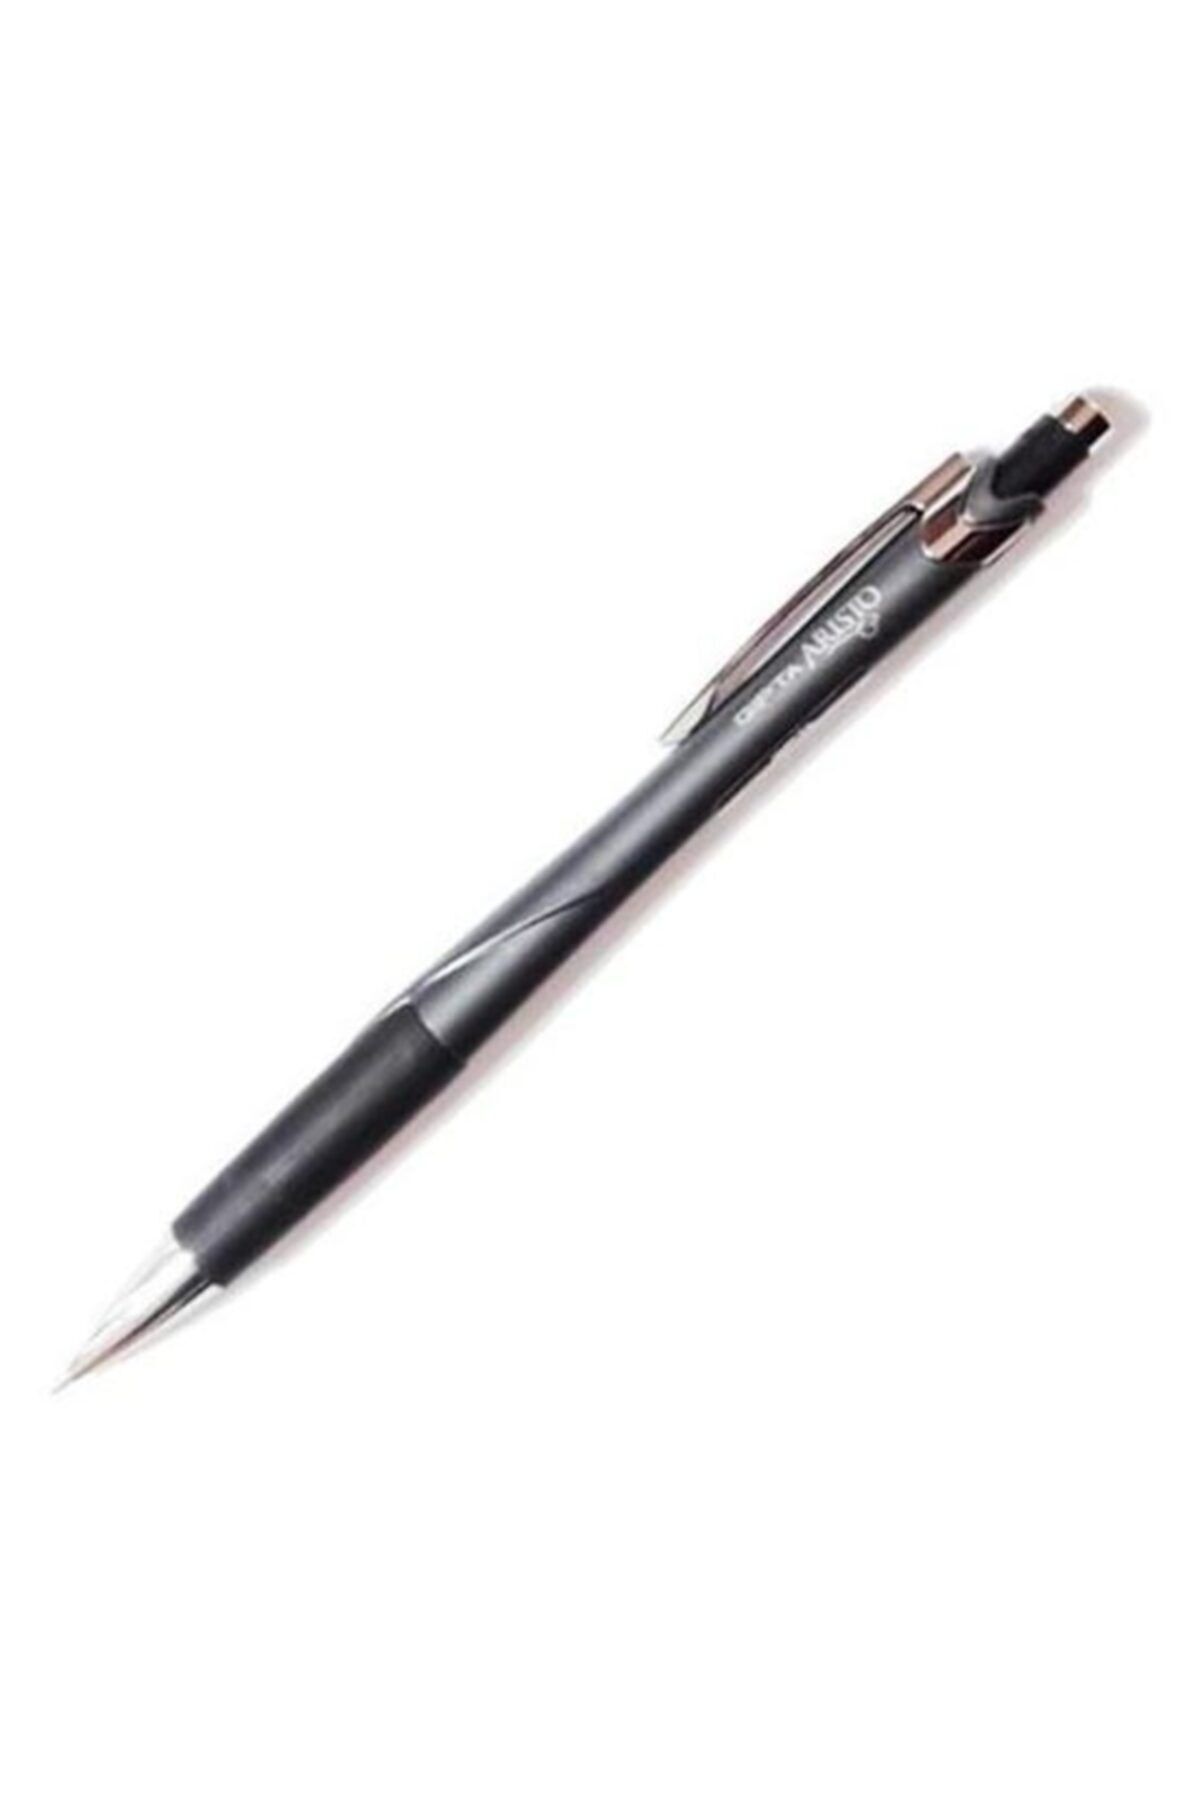 Gıpta Versatil Kalem (mekanik Uçlu Kurşun Kalem) Aristo 0.7mm Koyu Gri (12 Li Paket) K1836